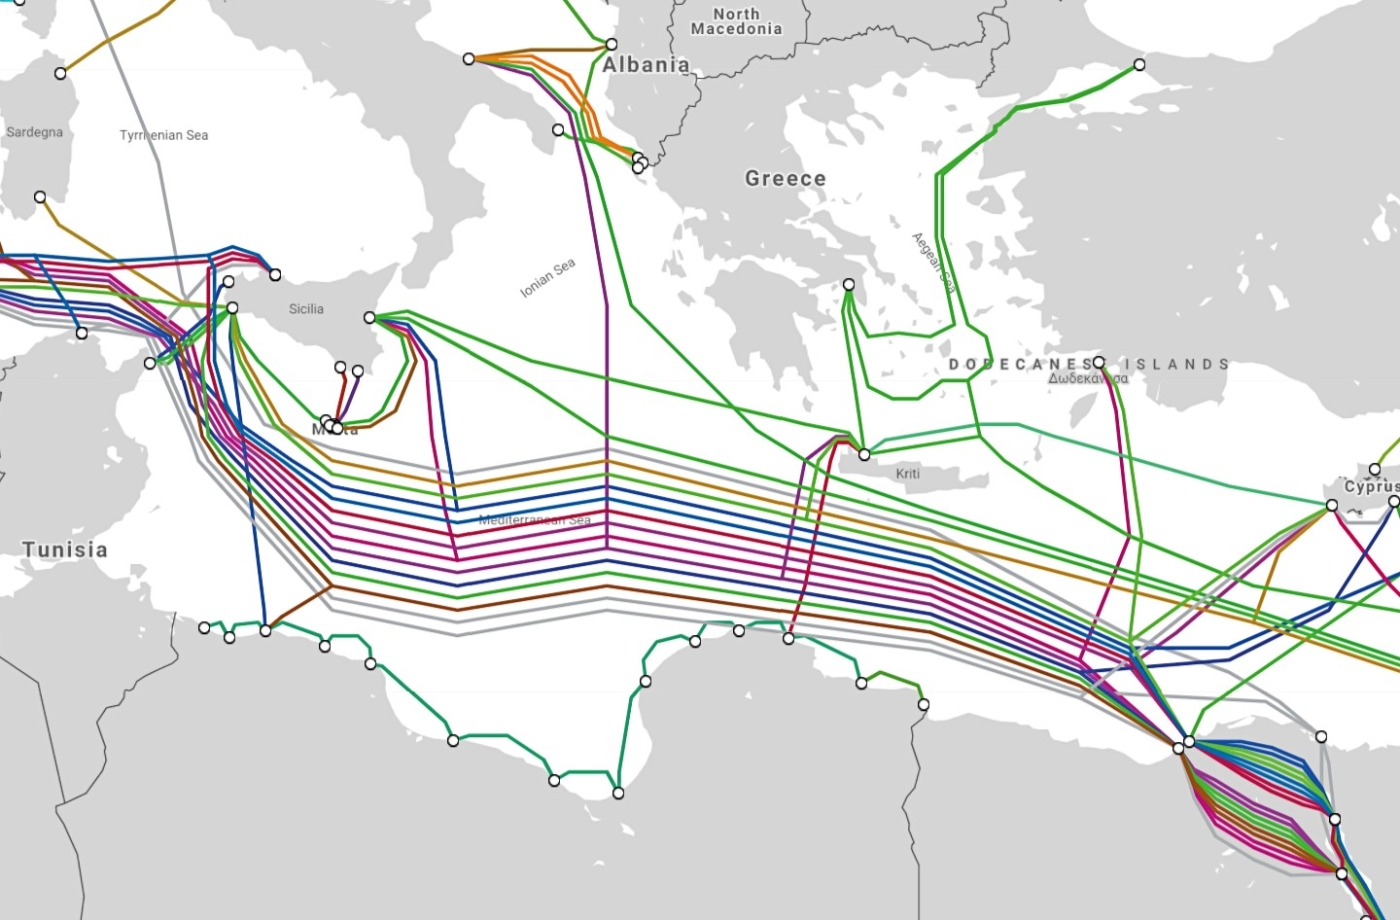 Πώς φαίνεται το Διαδίκτυο: Υποβρύχια καλώδια στη Μέση Ανατολή